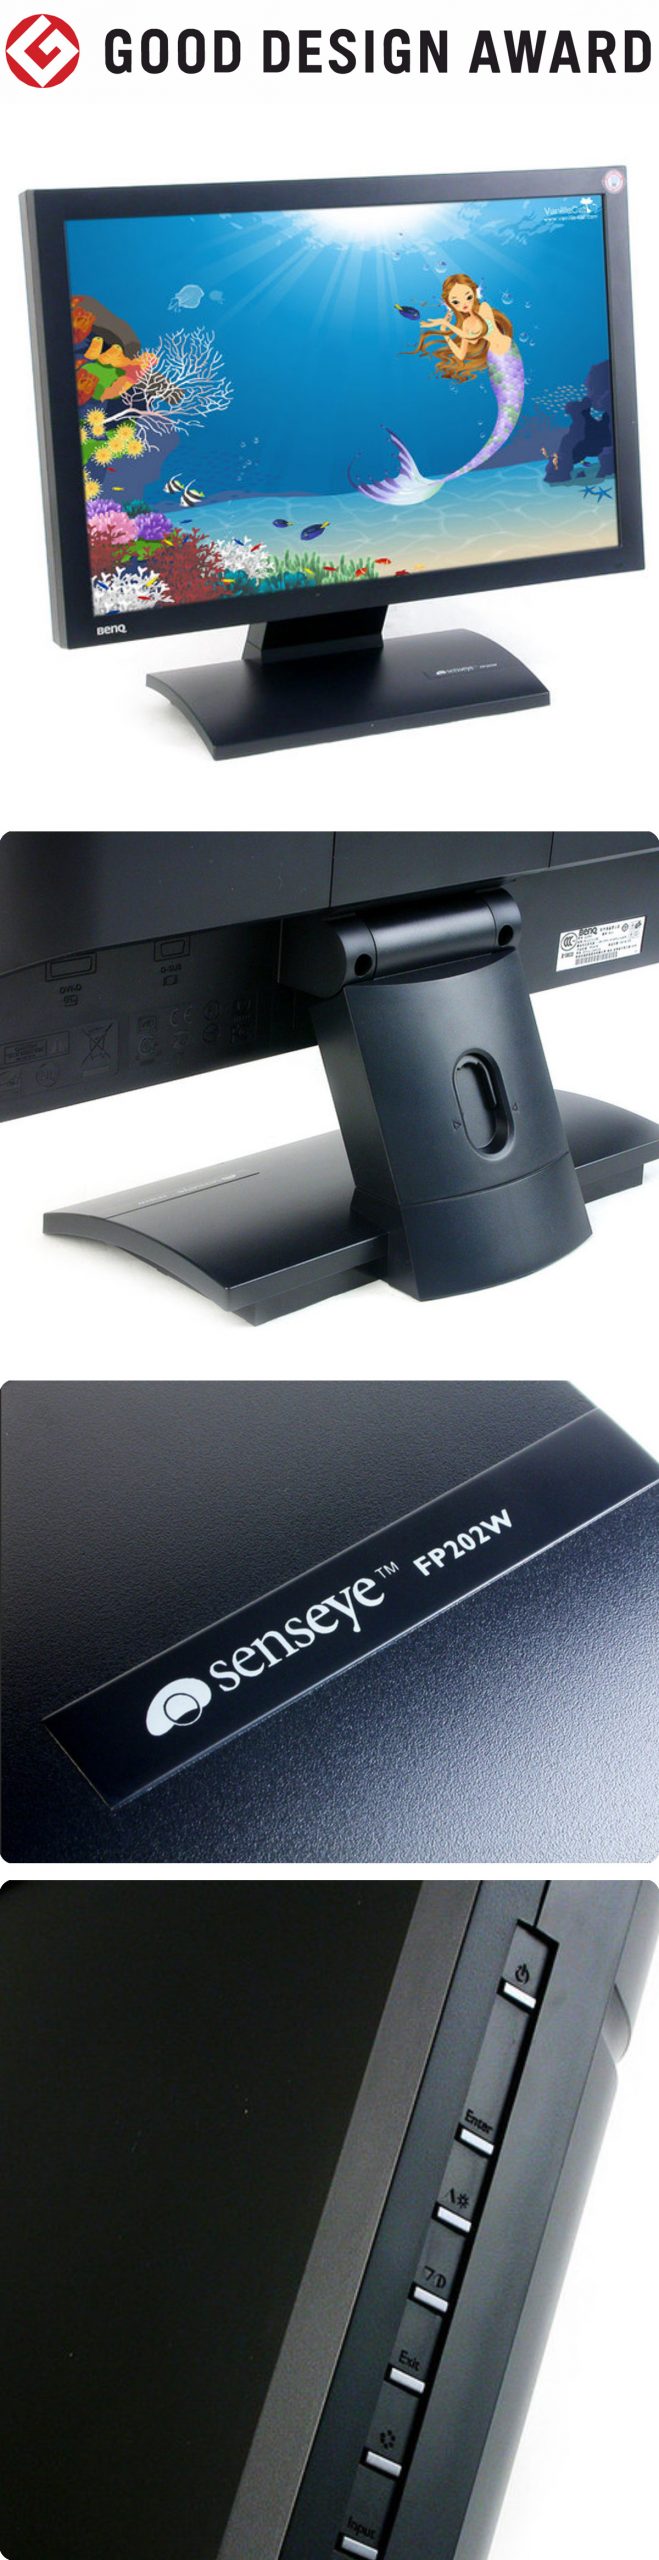 【日本】明基BenQ液晶显示器FP202W获颁2005年度G-Mark设计大奖（GOOD DESIGN AWARD 2005）